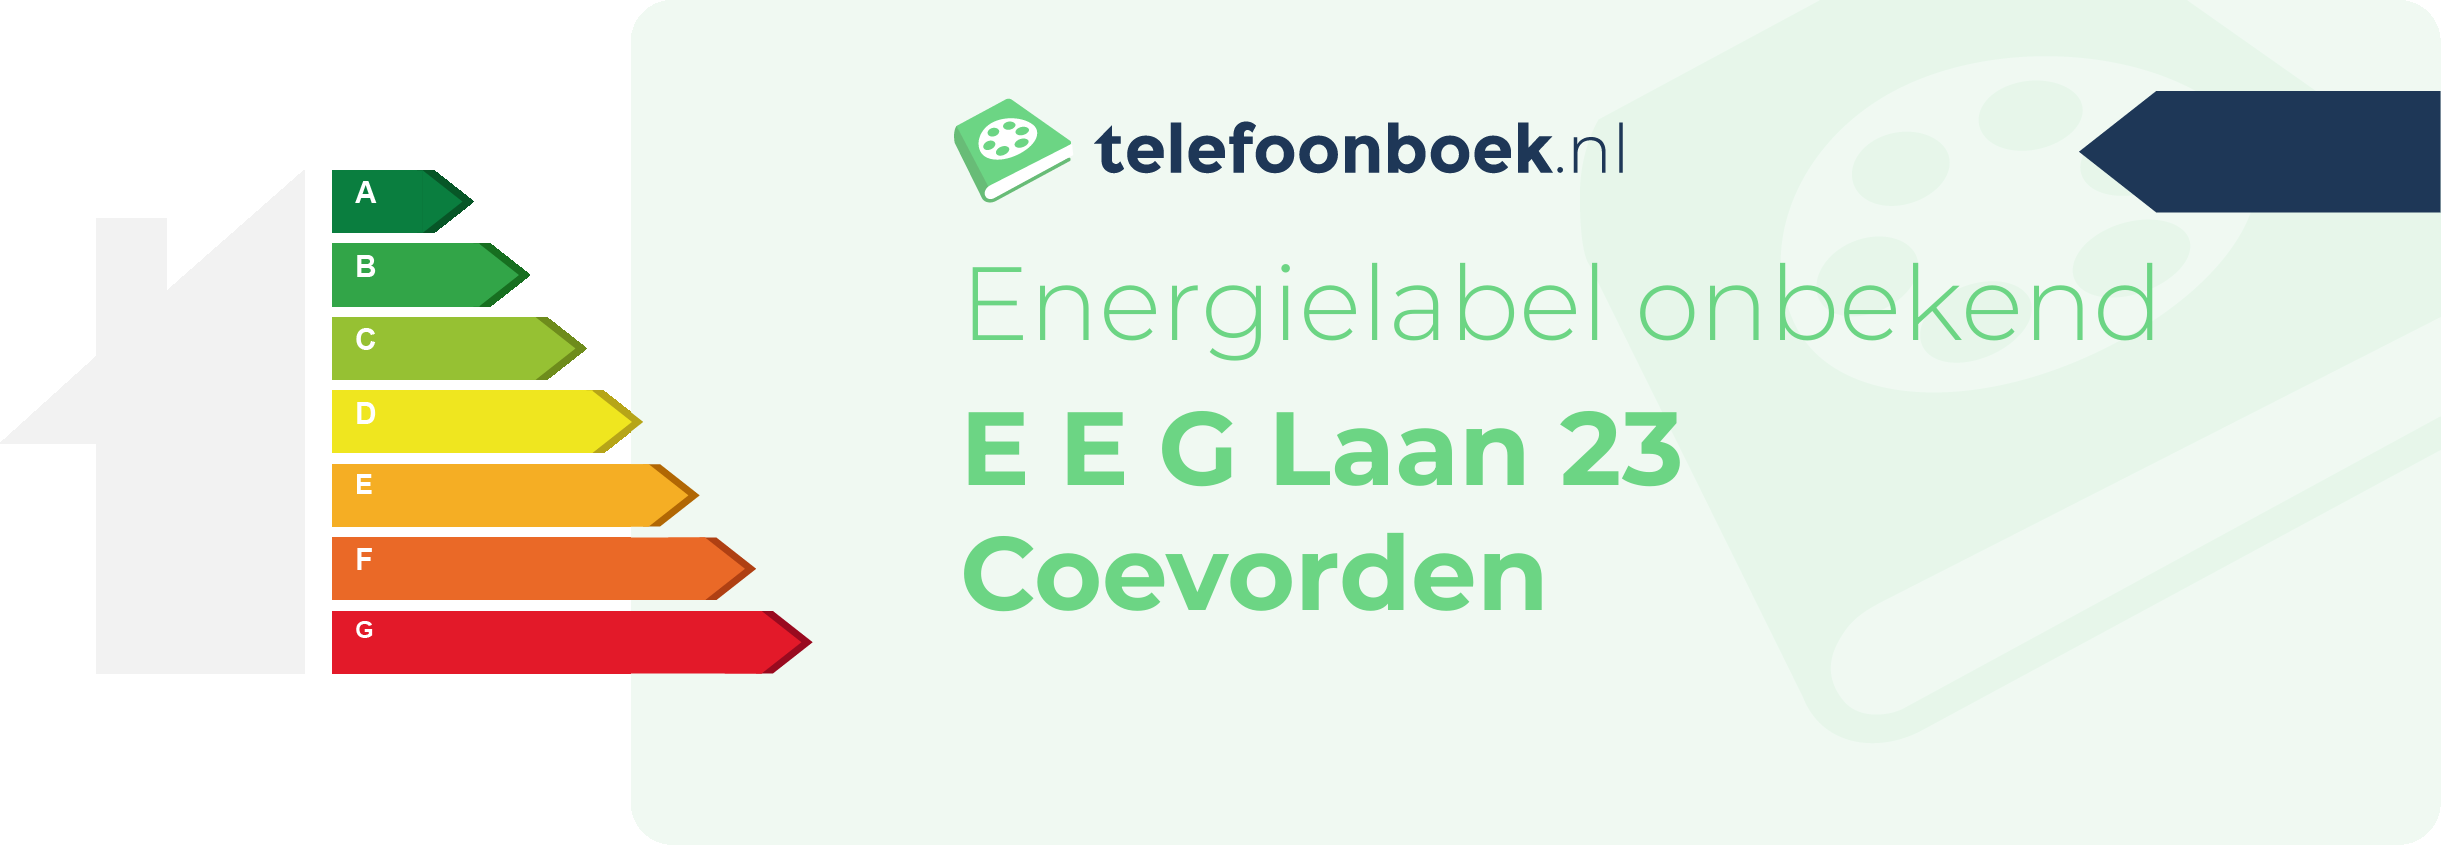 Energielabel E E G Laan 23 Coevorden